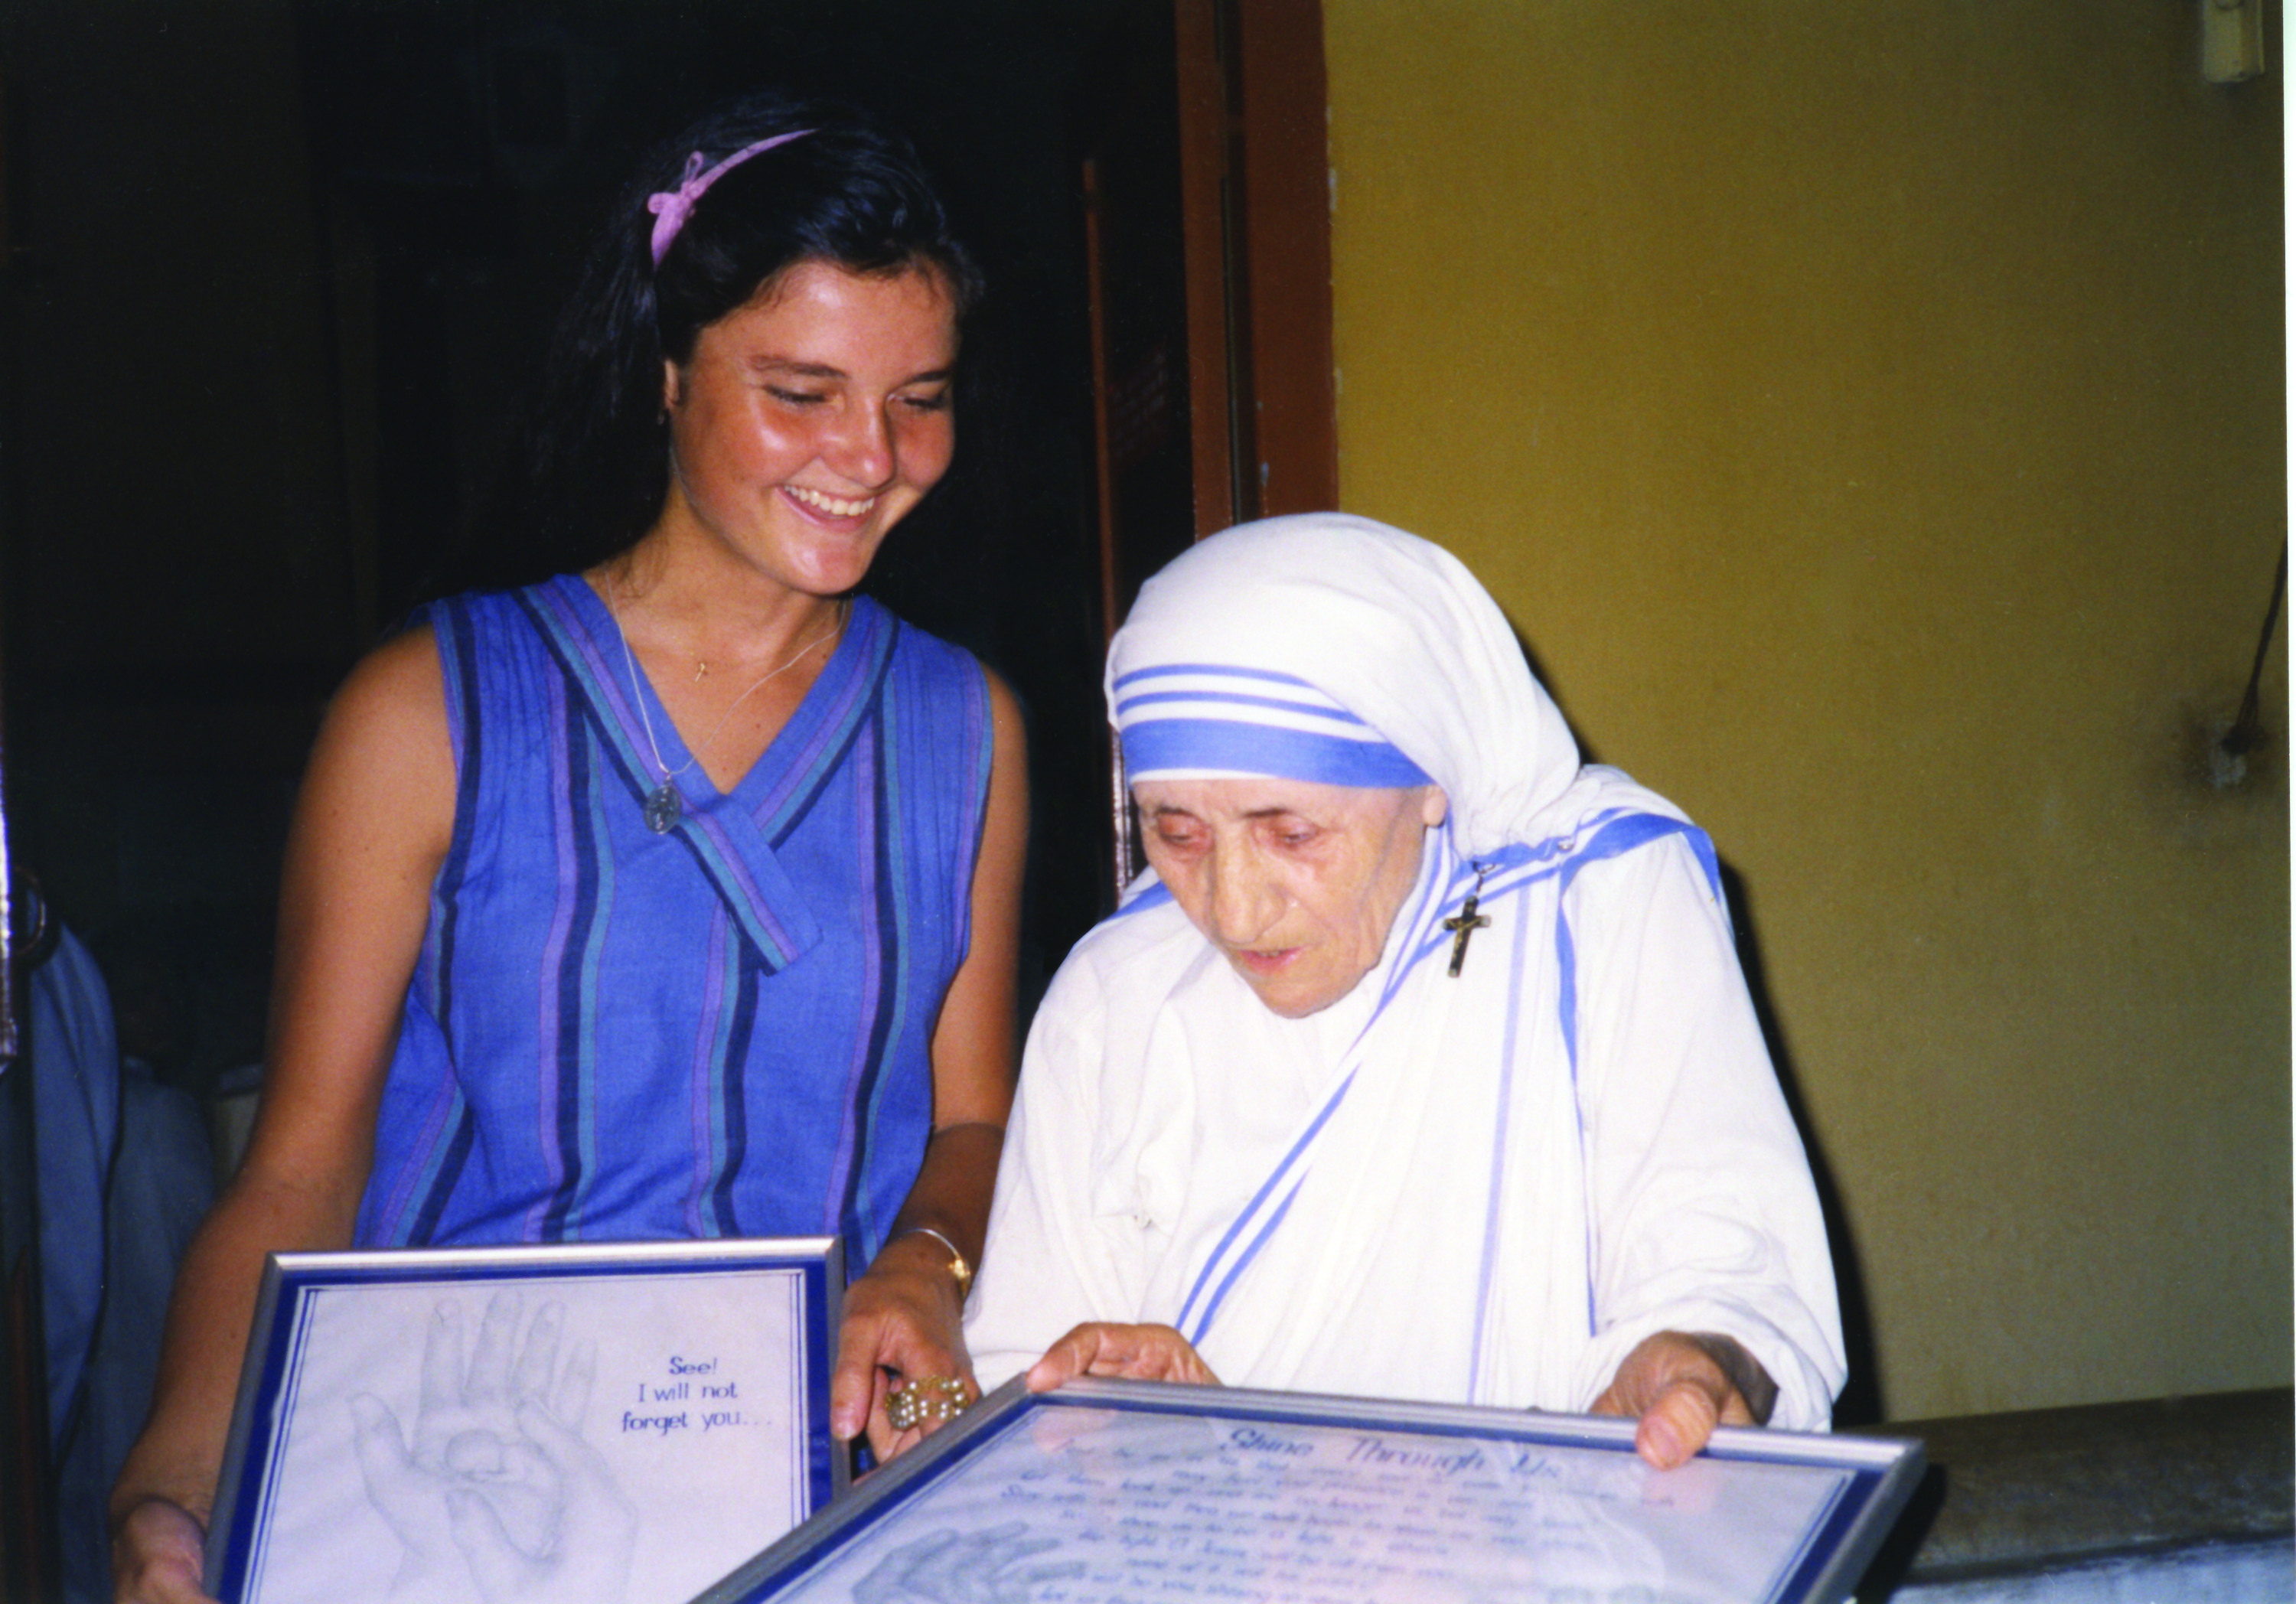 Meeting Mother Teresa of Calcutta